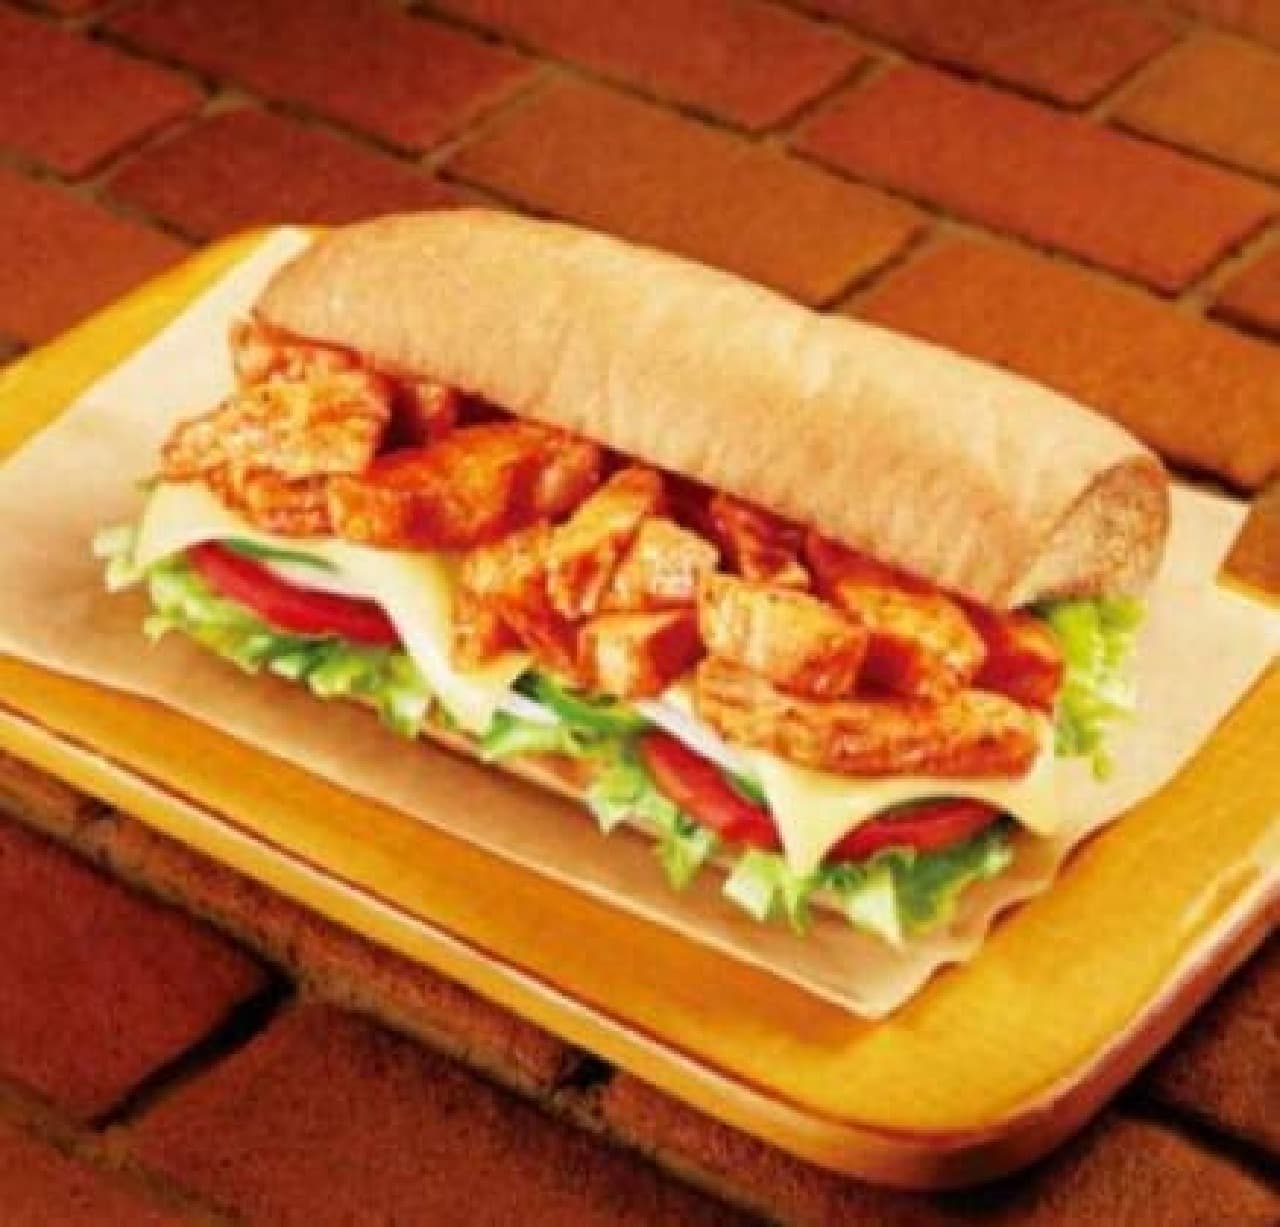 Subway's new work "Chili Chicken Cheese Melt"